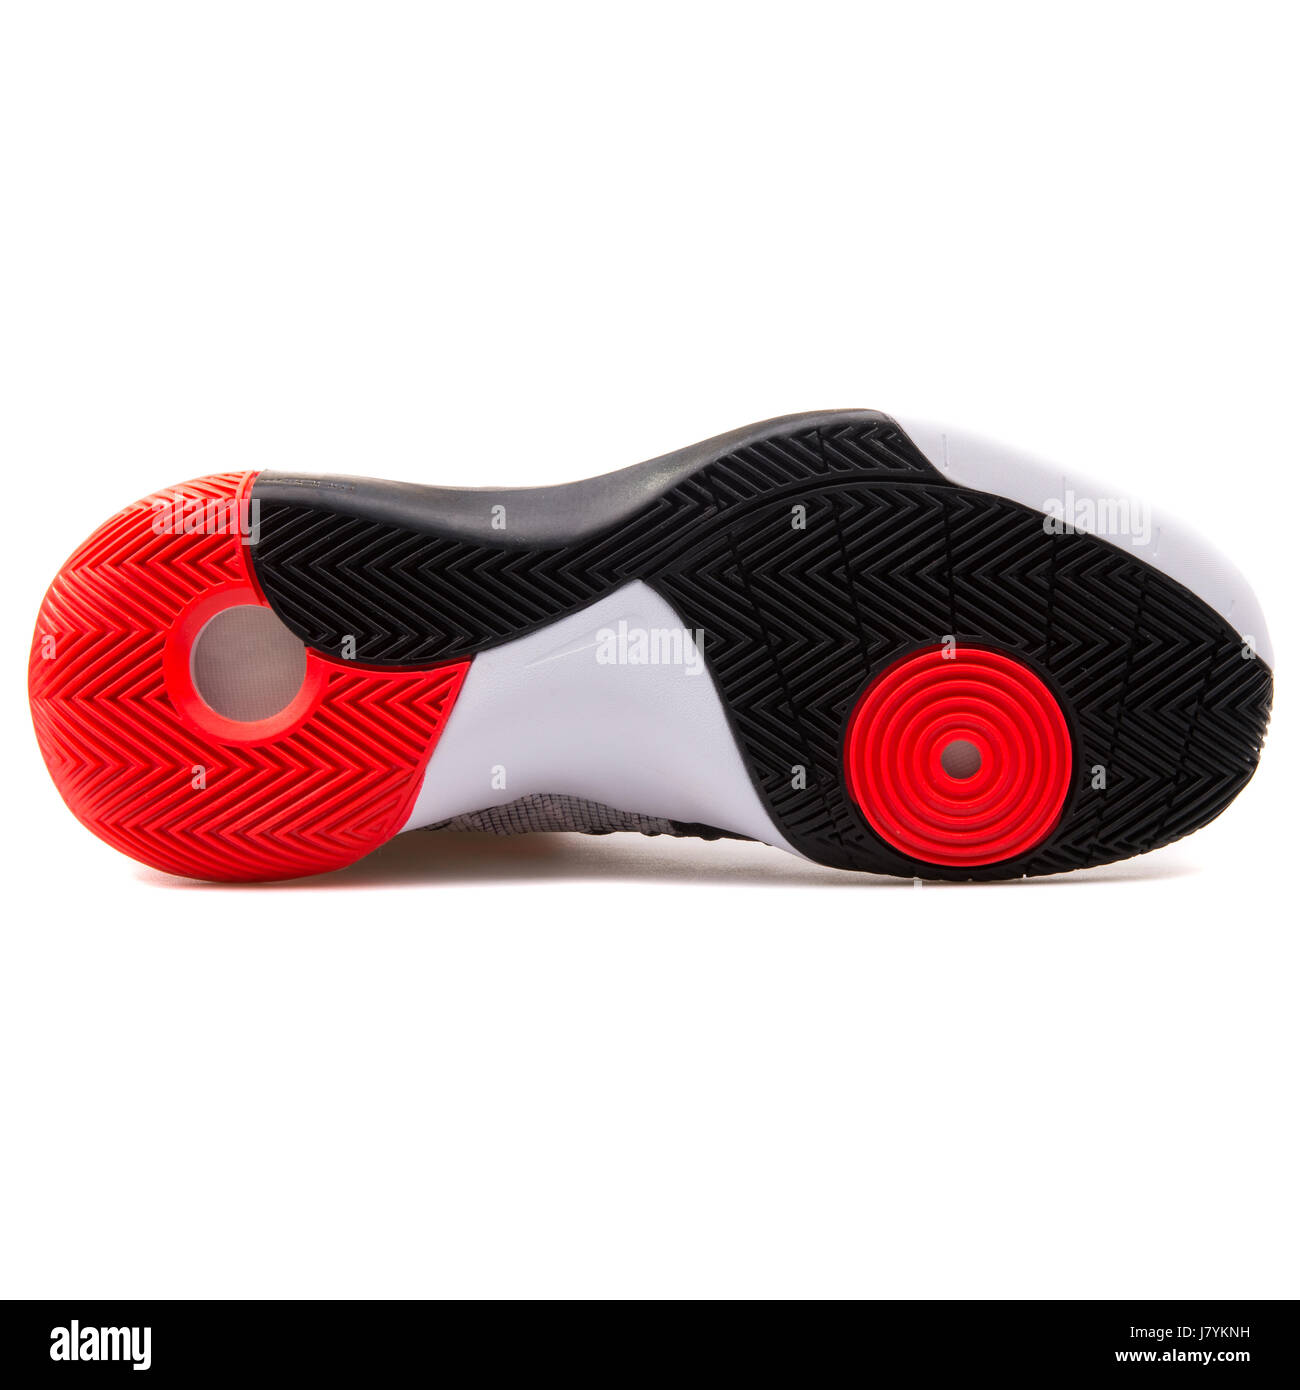 Nike Hyperdunk 2015 PRM zapatillas de baloncesto masculino - 749567-160  Fotografía de stock - Alamy